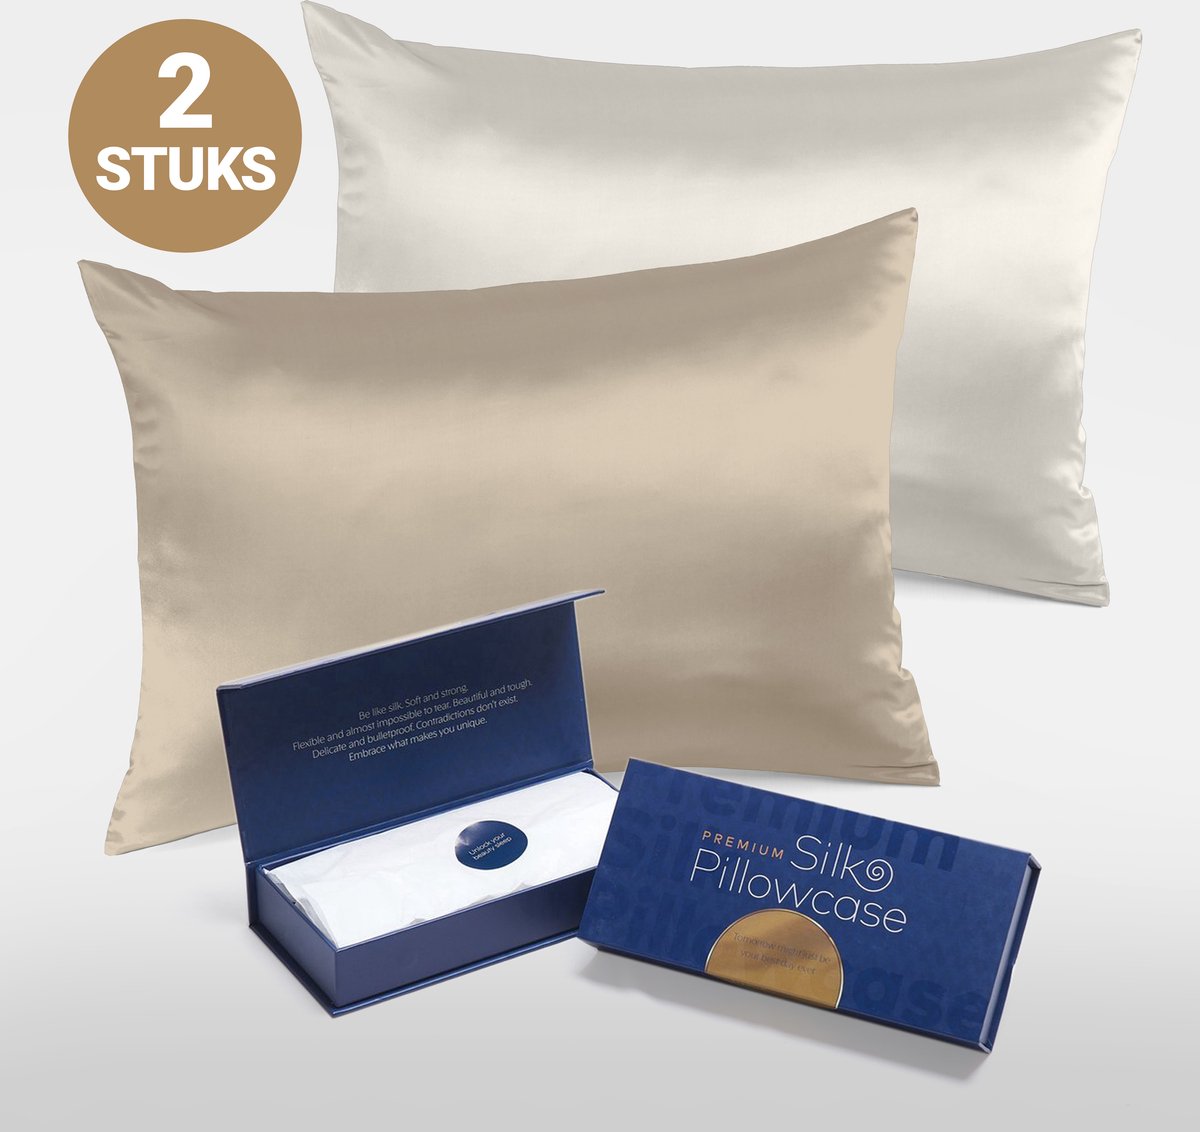 Slowwave Premium Silk Pillowcase - Extra voordelig colorpack: Champagne en Off-white (gebroken wit) - Ervaar het beste zijden kussensloop - 100% Mulberry zijde - 22 momme - Hoogste kwaliteit (grade 6A) - 60x70cm